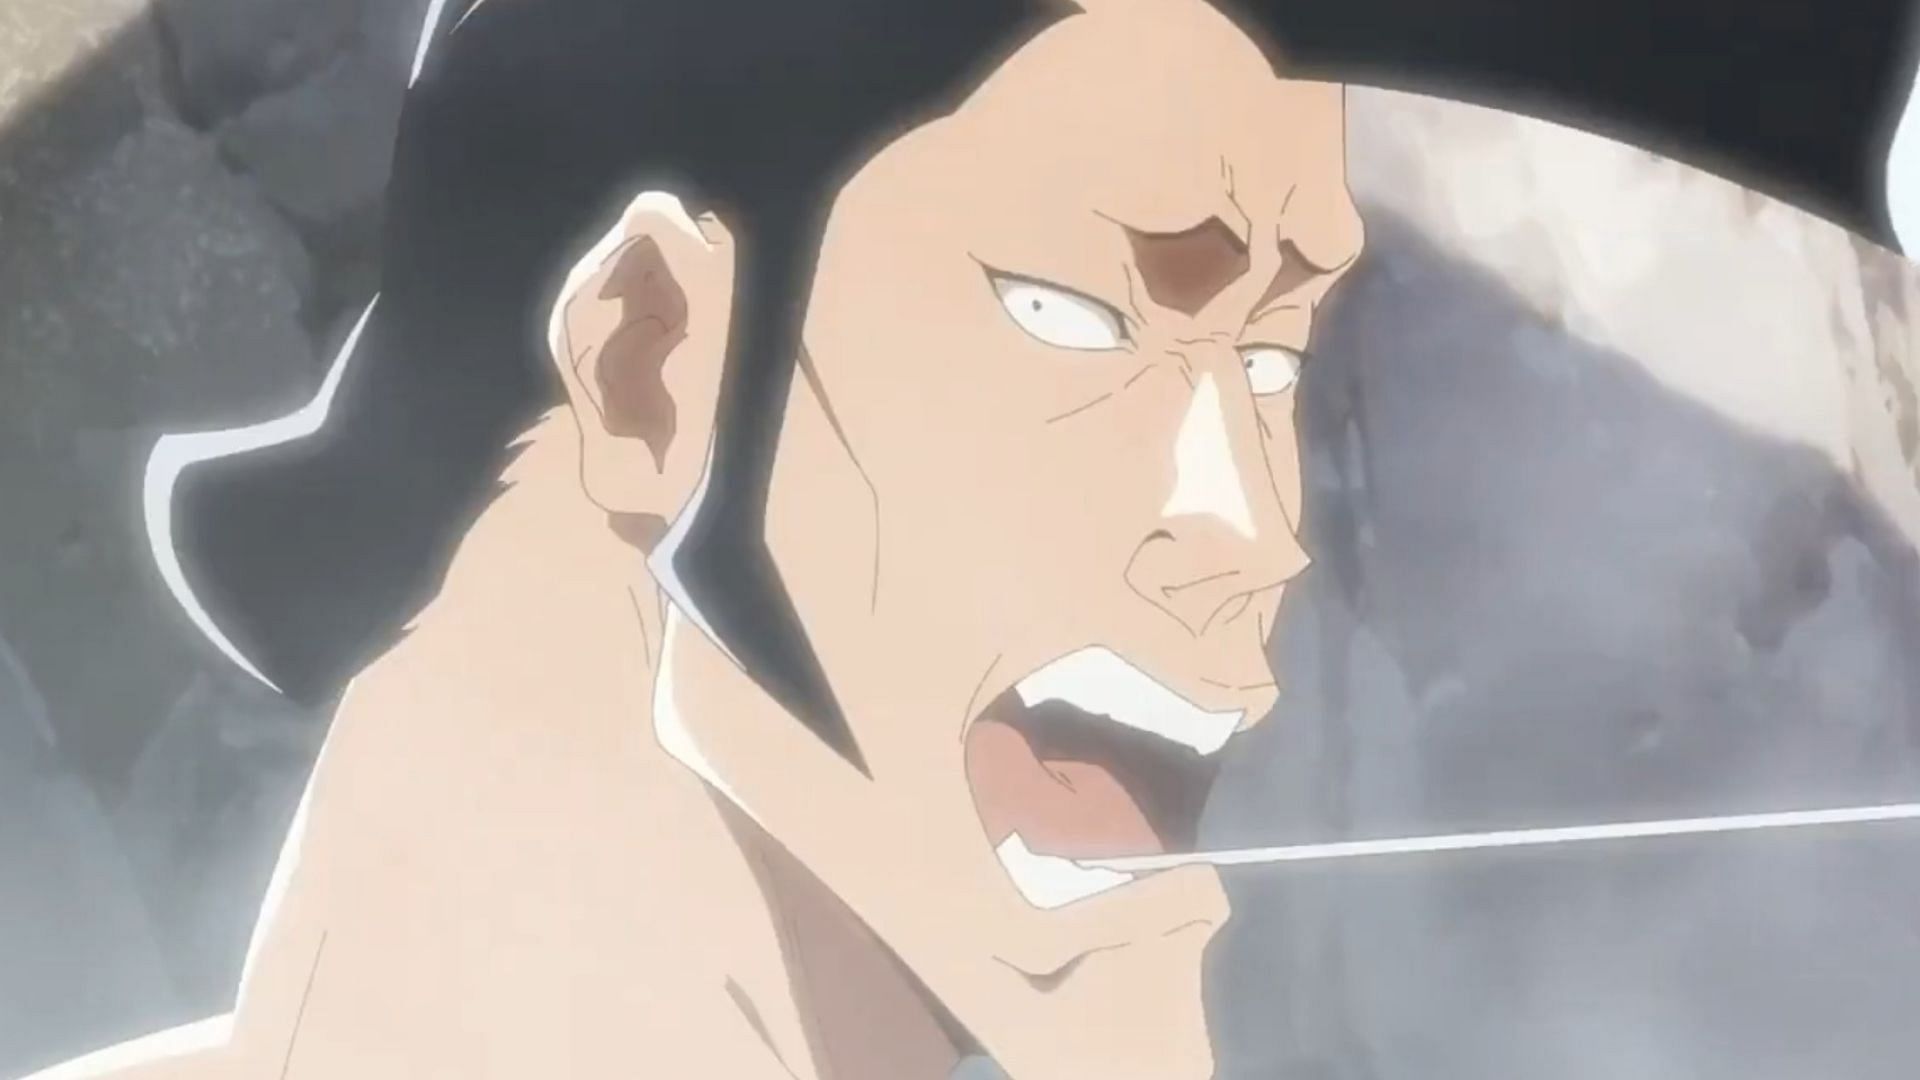 Kirinji in his hot spring as seen in the Bleach anime (image via Studio Pierrot)